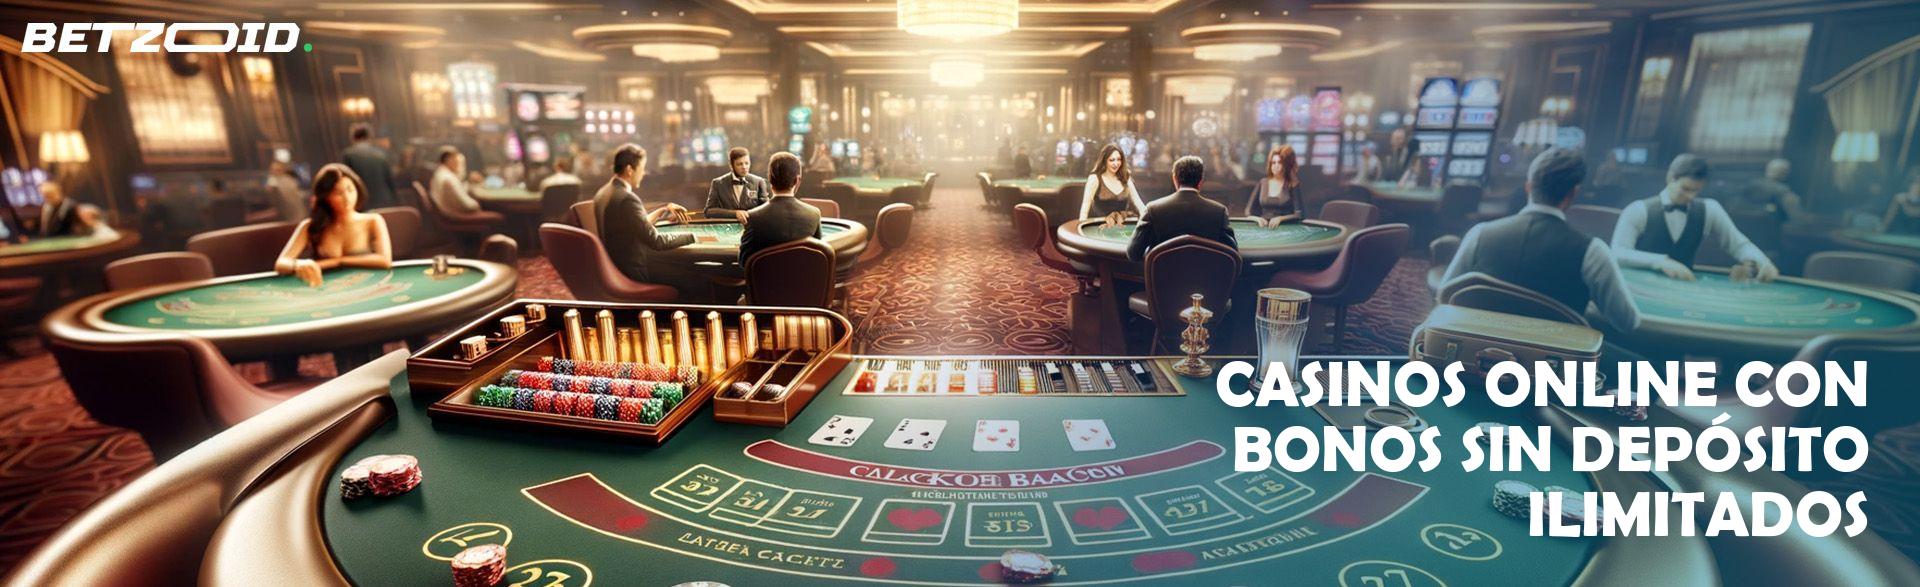 Casinos Online con Bonos sin Depósito Ilimitados.